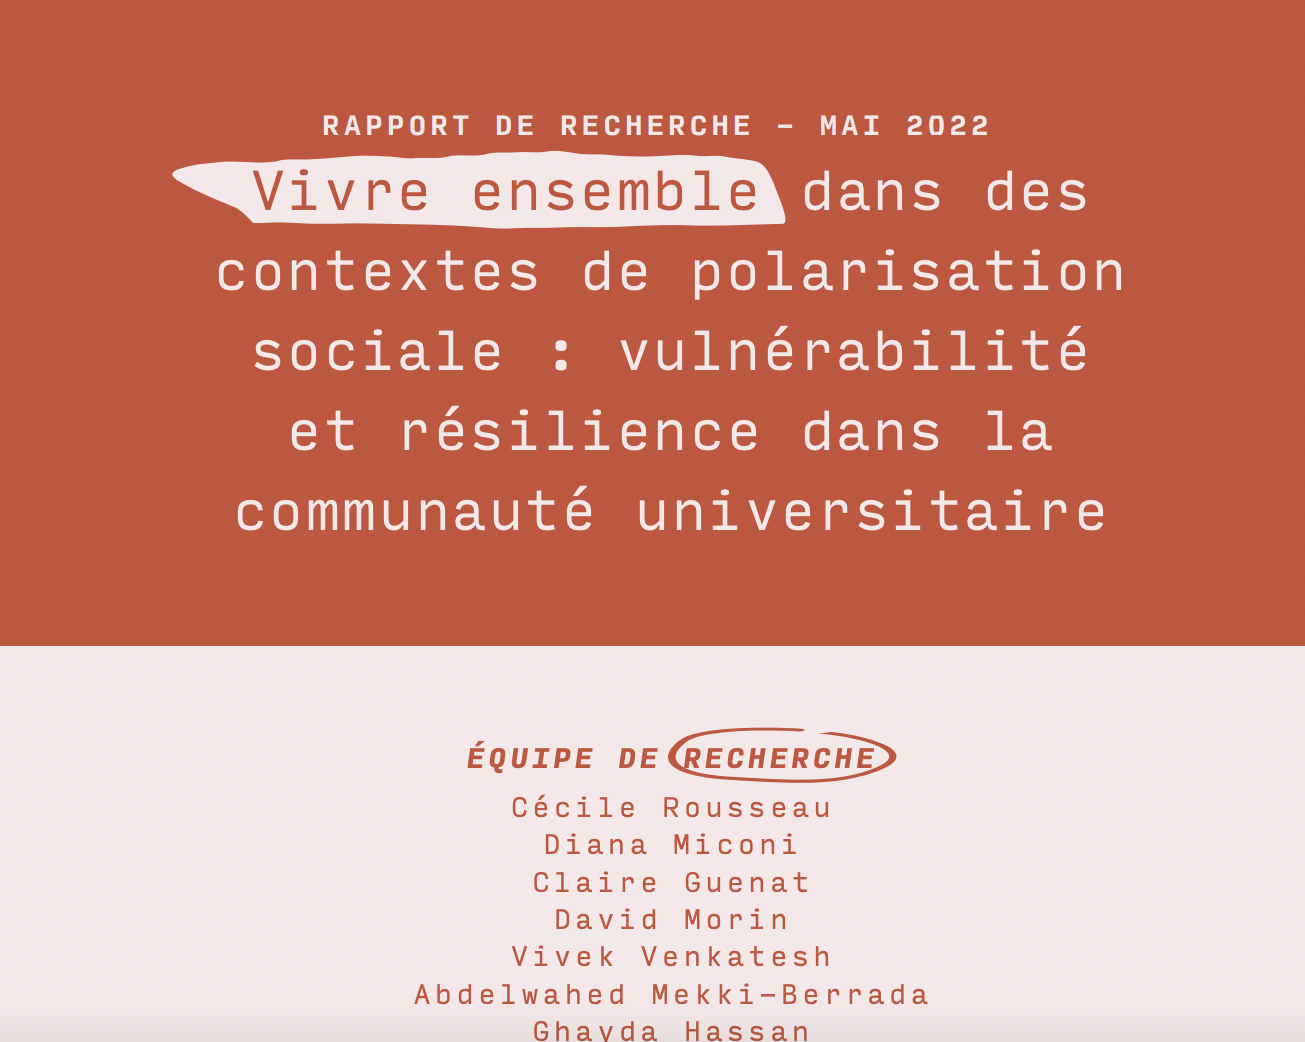 Publication of a Report Titled: « Vivre ensemble dans des contextes de polarisation sociale : vulnérabilité et résilience dans la communauté universitaire »